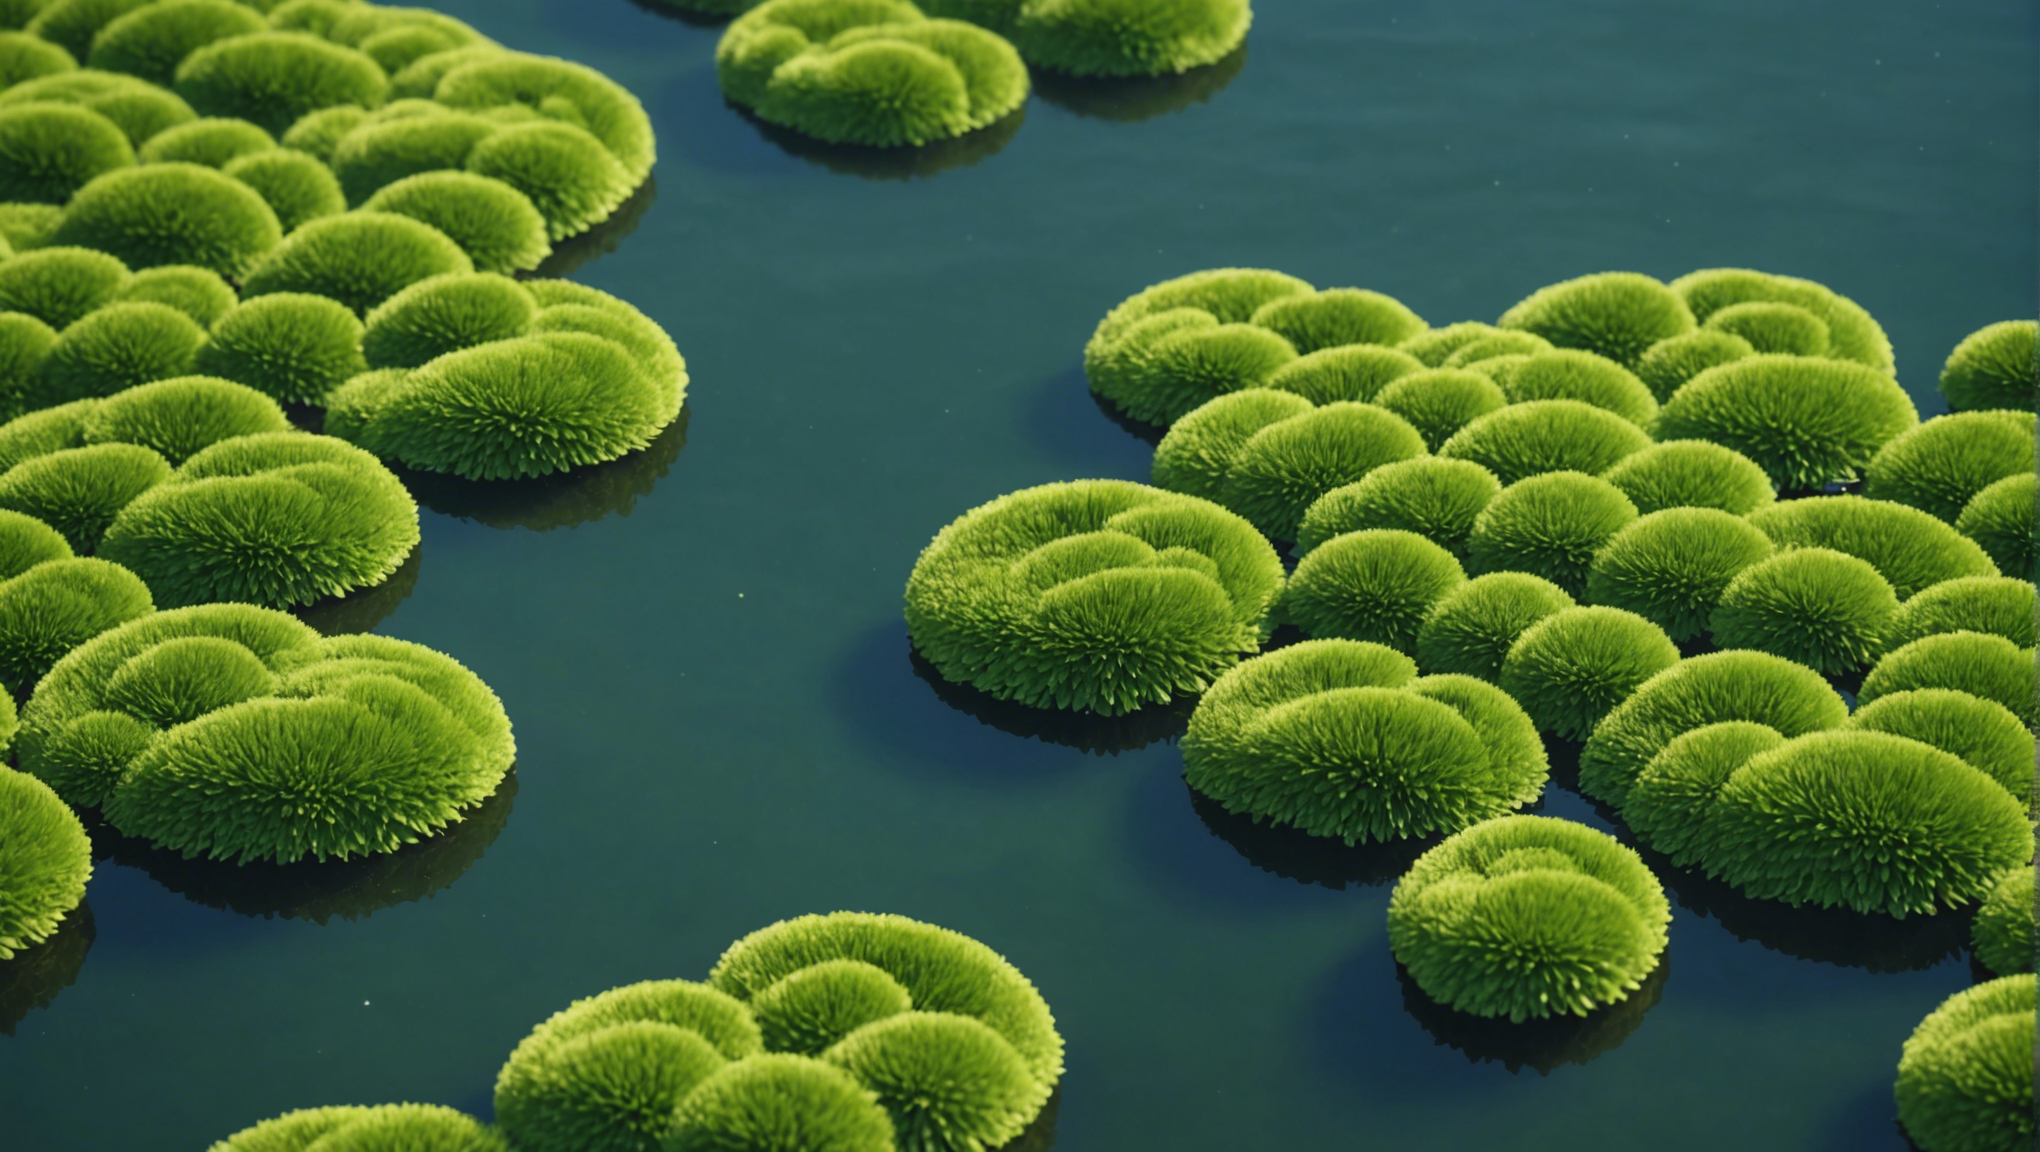 découvrez des conseils utiles pour prévenir la prolifération des algues et maintenir un écosystème aquatique sain. apprenez les meilleures pratiques pour limiter l'apparition des algues dans votre environnement aquatique.